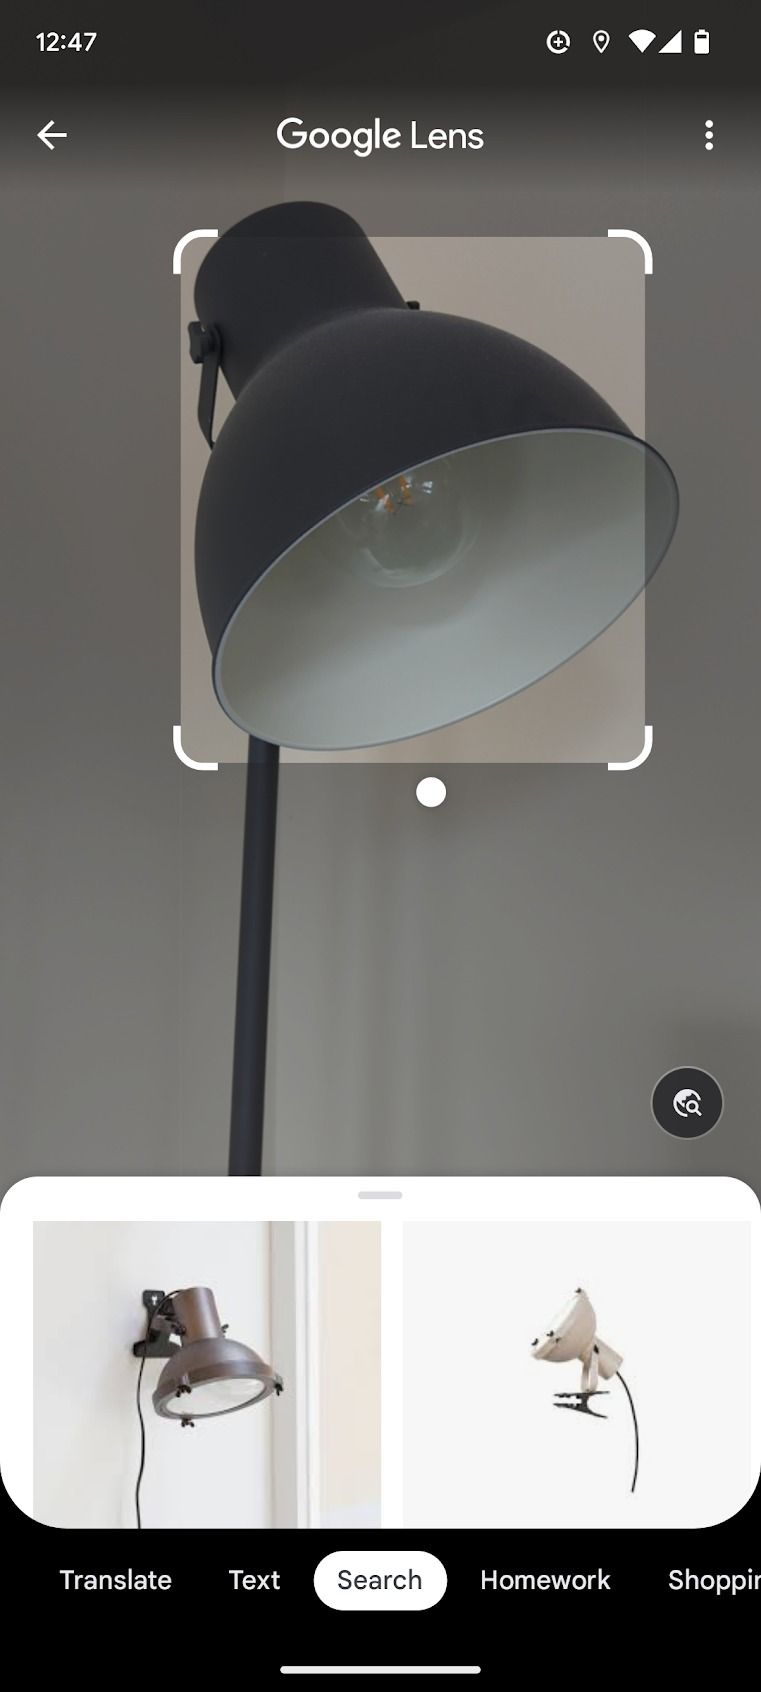 Uma captura de tela do aplicativo Google Lens é exibida, mostrando os resultados da digitalização de uma lâmpada.